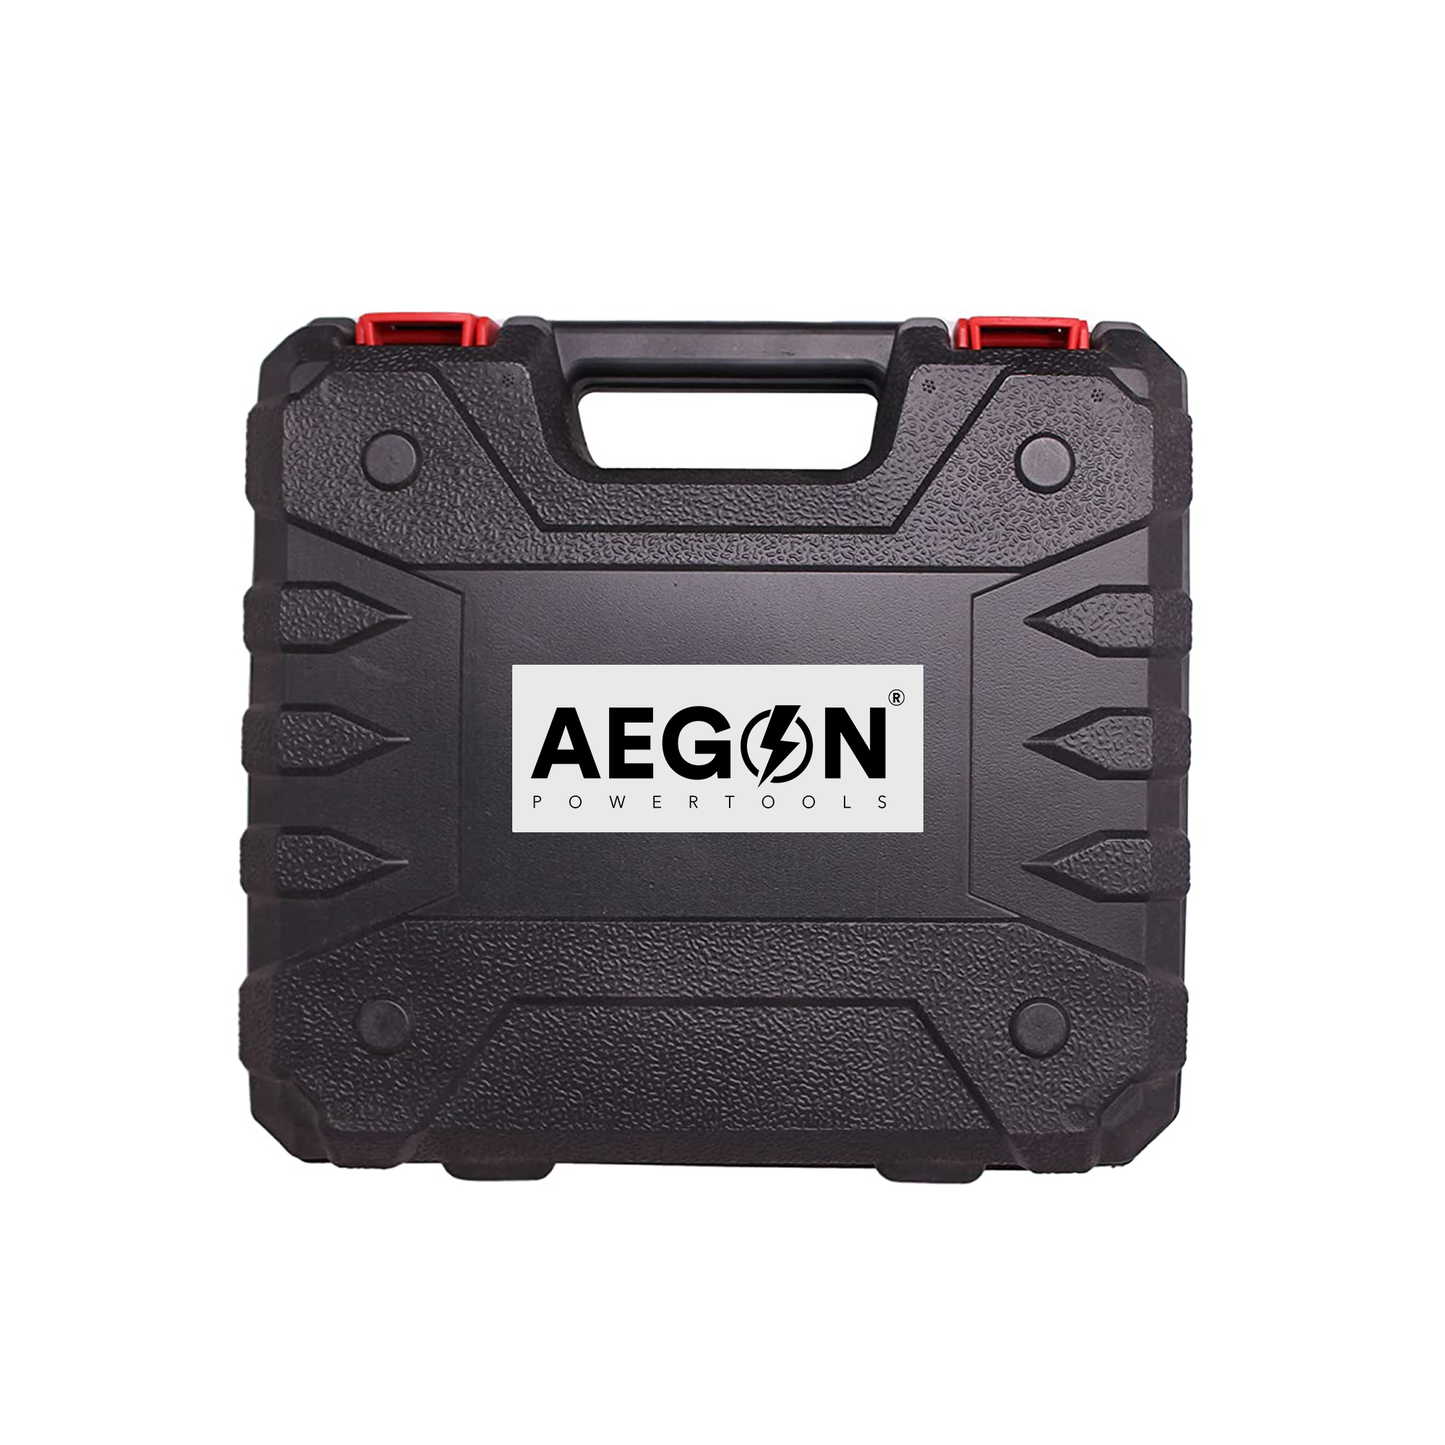 Aegon Professional ACS12V - 10mm Reversible/Variable Speed Cordless Screwdriver (30 pcs Tool Kit)